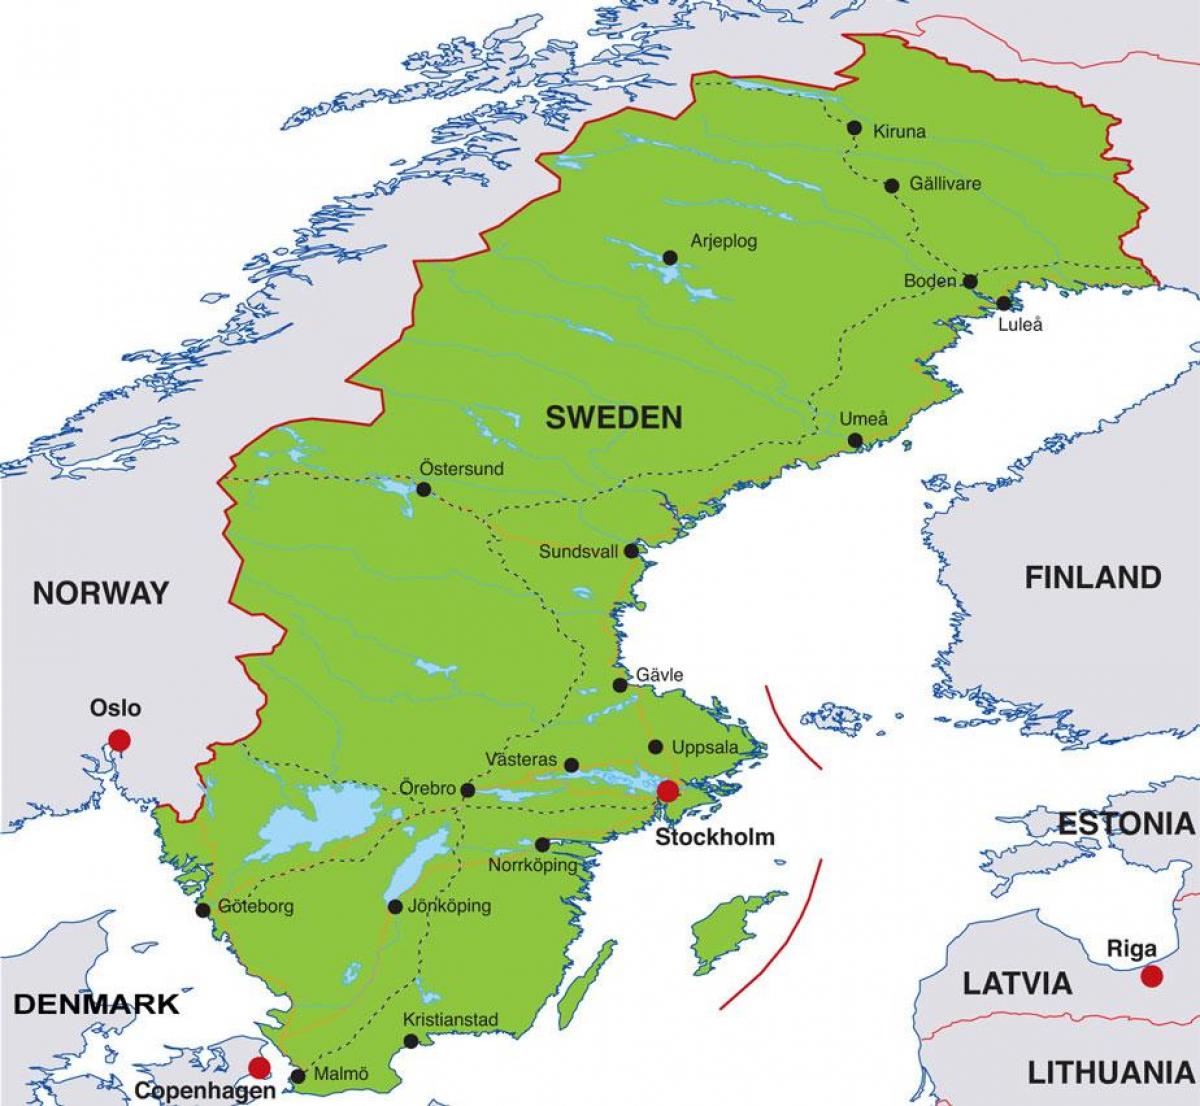 Շվեդիայի մայրաքաղաք քարտեզի վրա